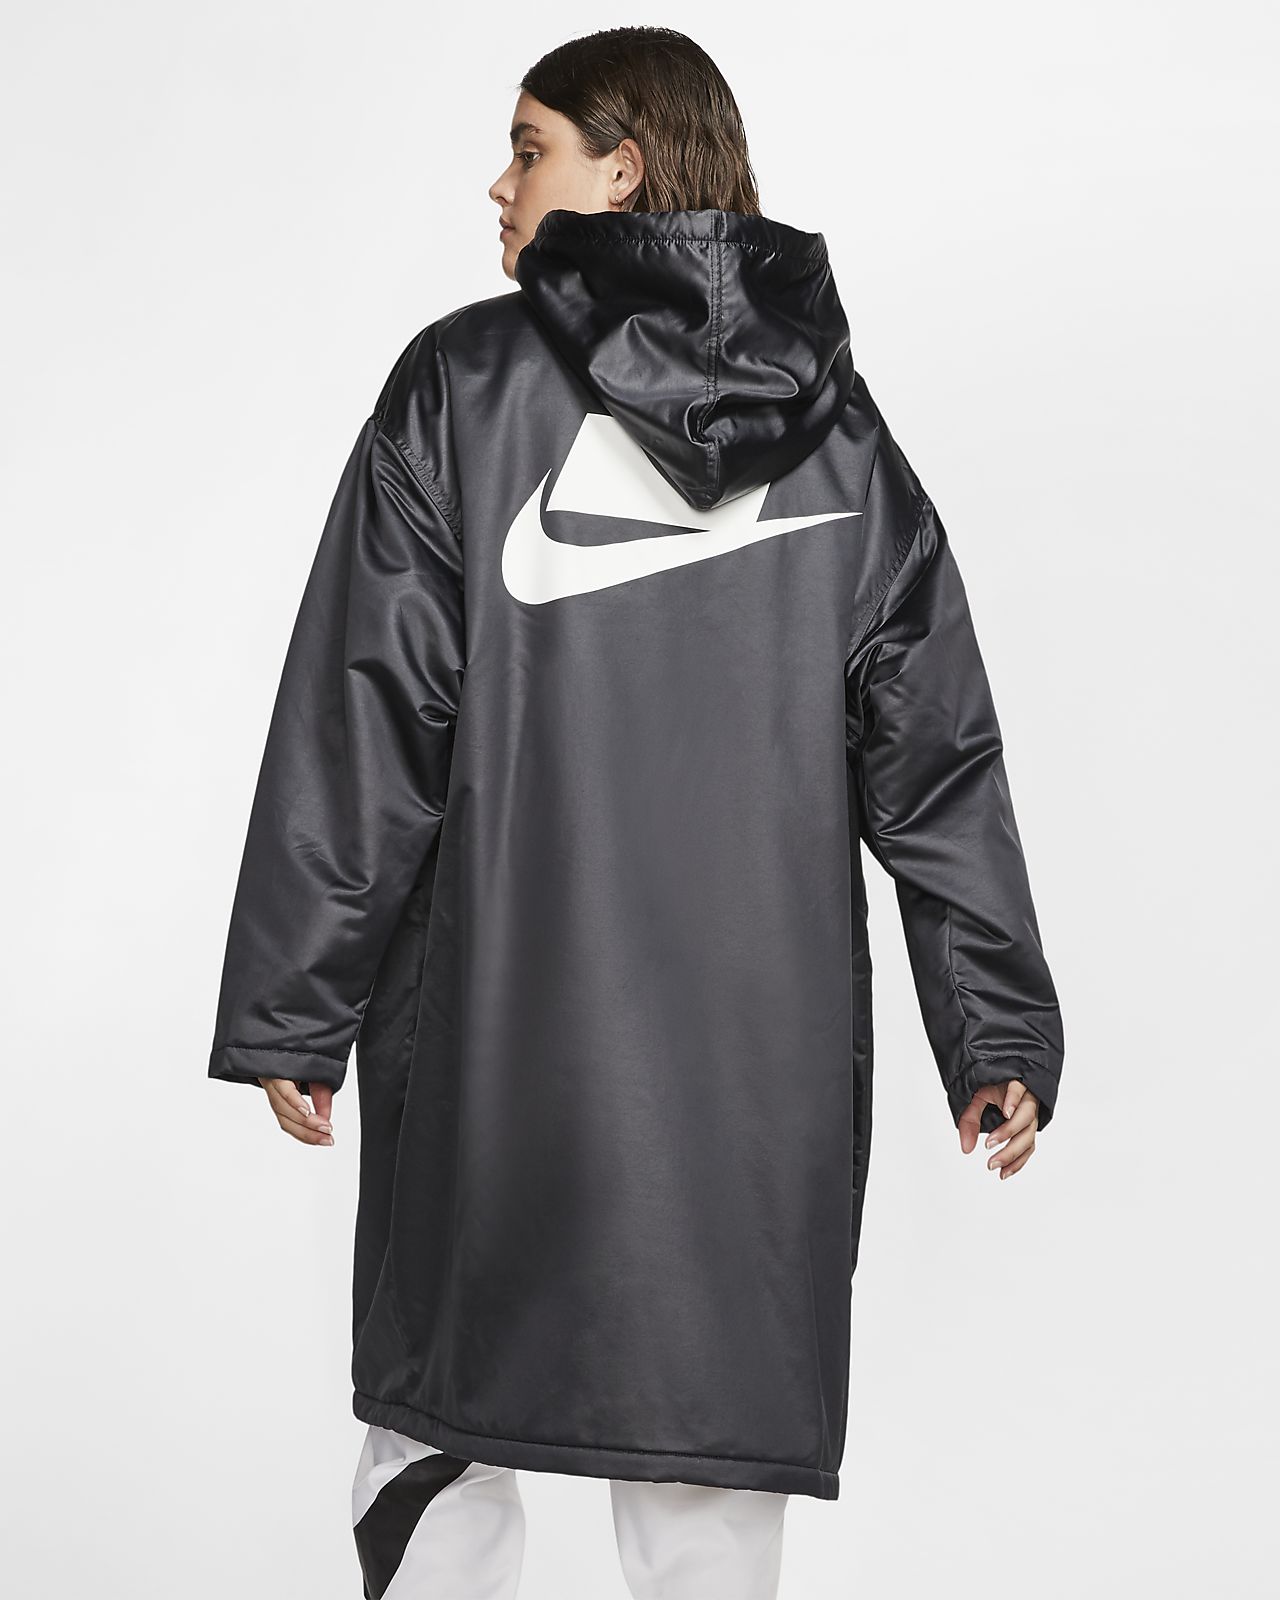 Nike Long Raincoat Deals, SAVE 32% celtictri.co.uk